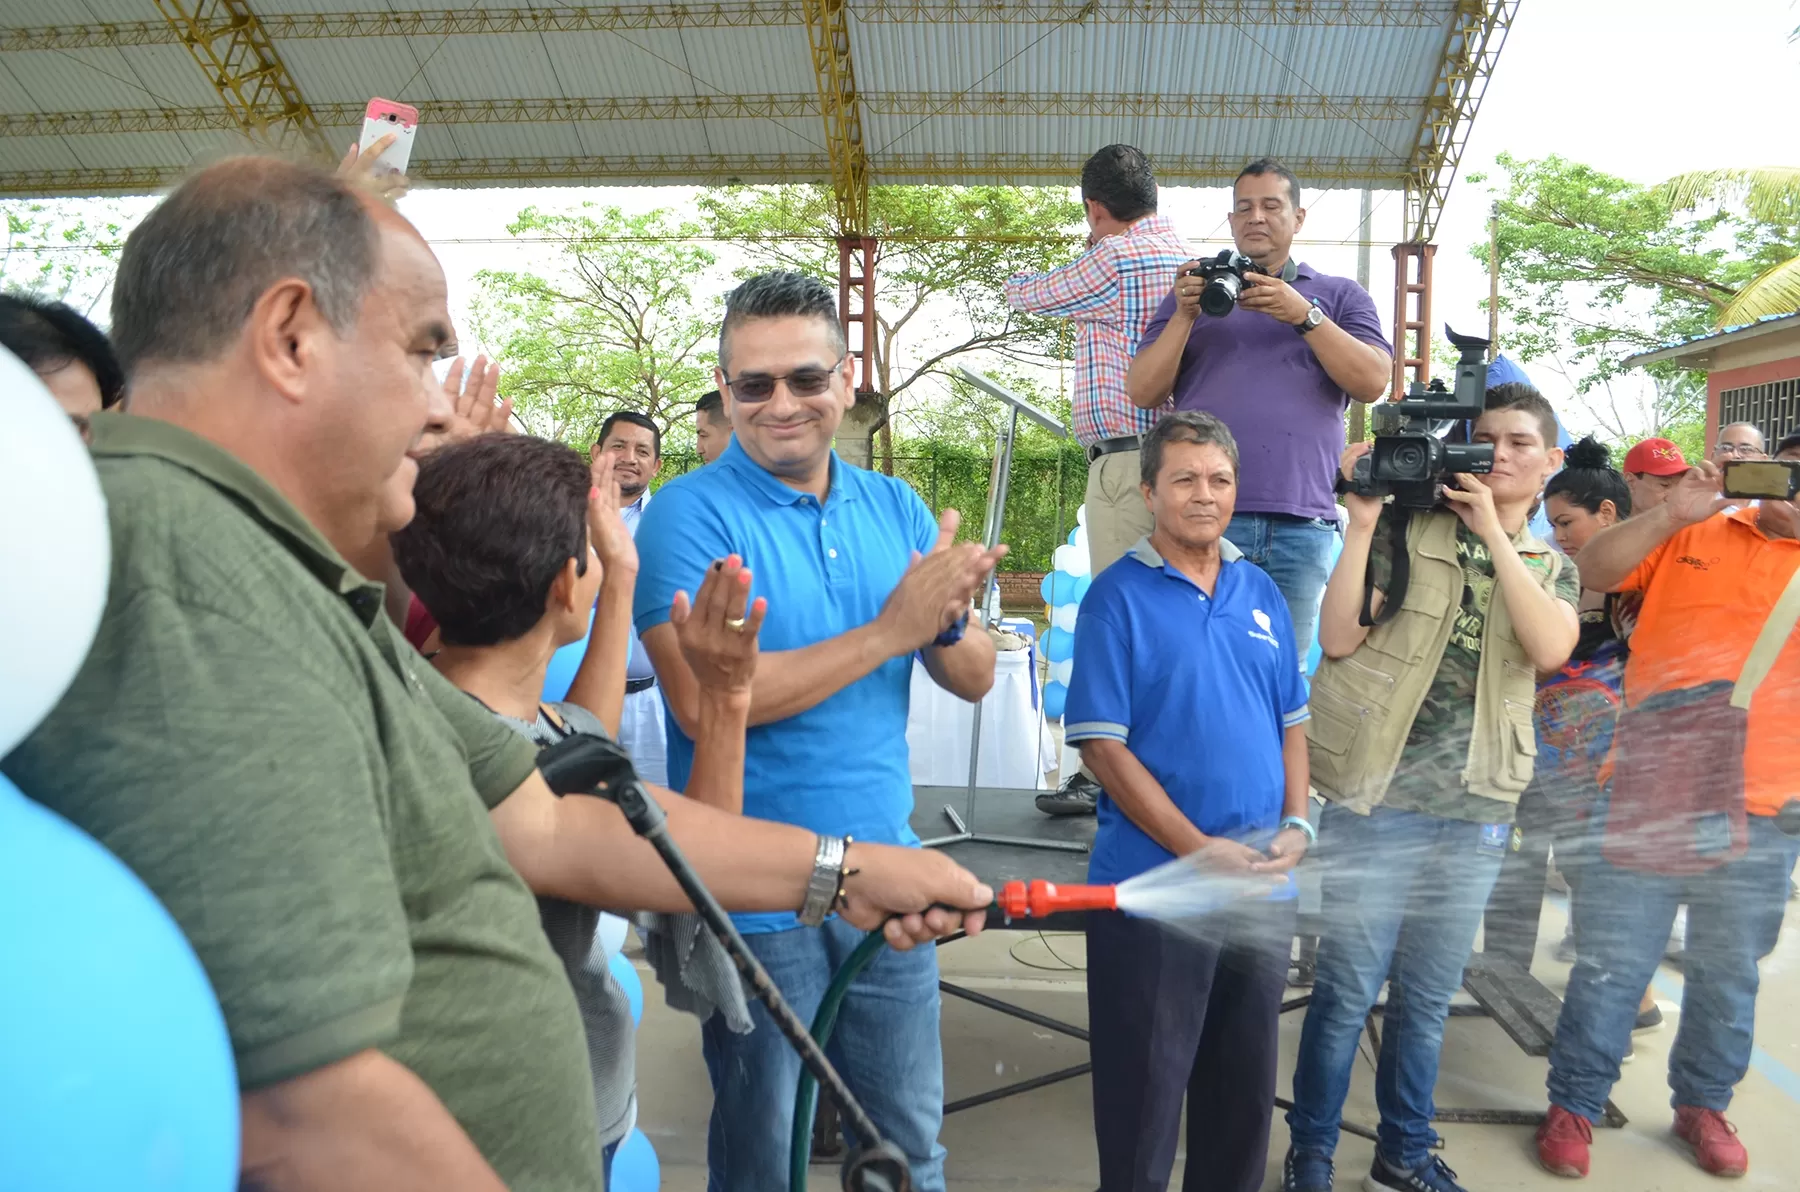 La comunidad del barrio Costa Hermosa de Arauca, tendrá a partir de la fecha el servicio de agua potable que llegará a todas sus casas.